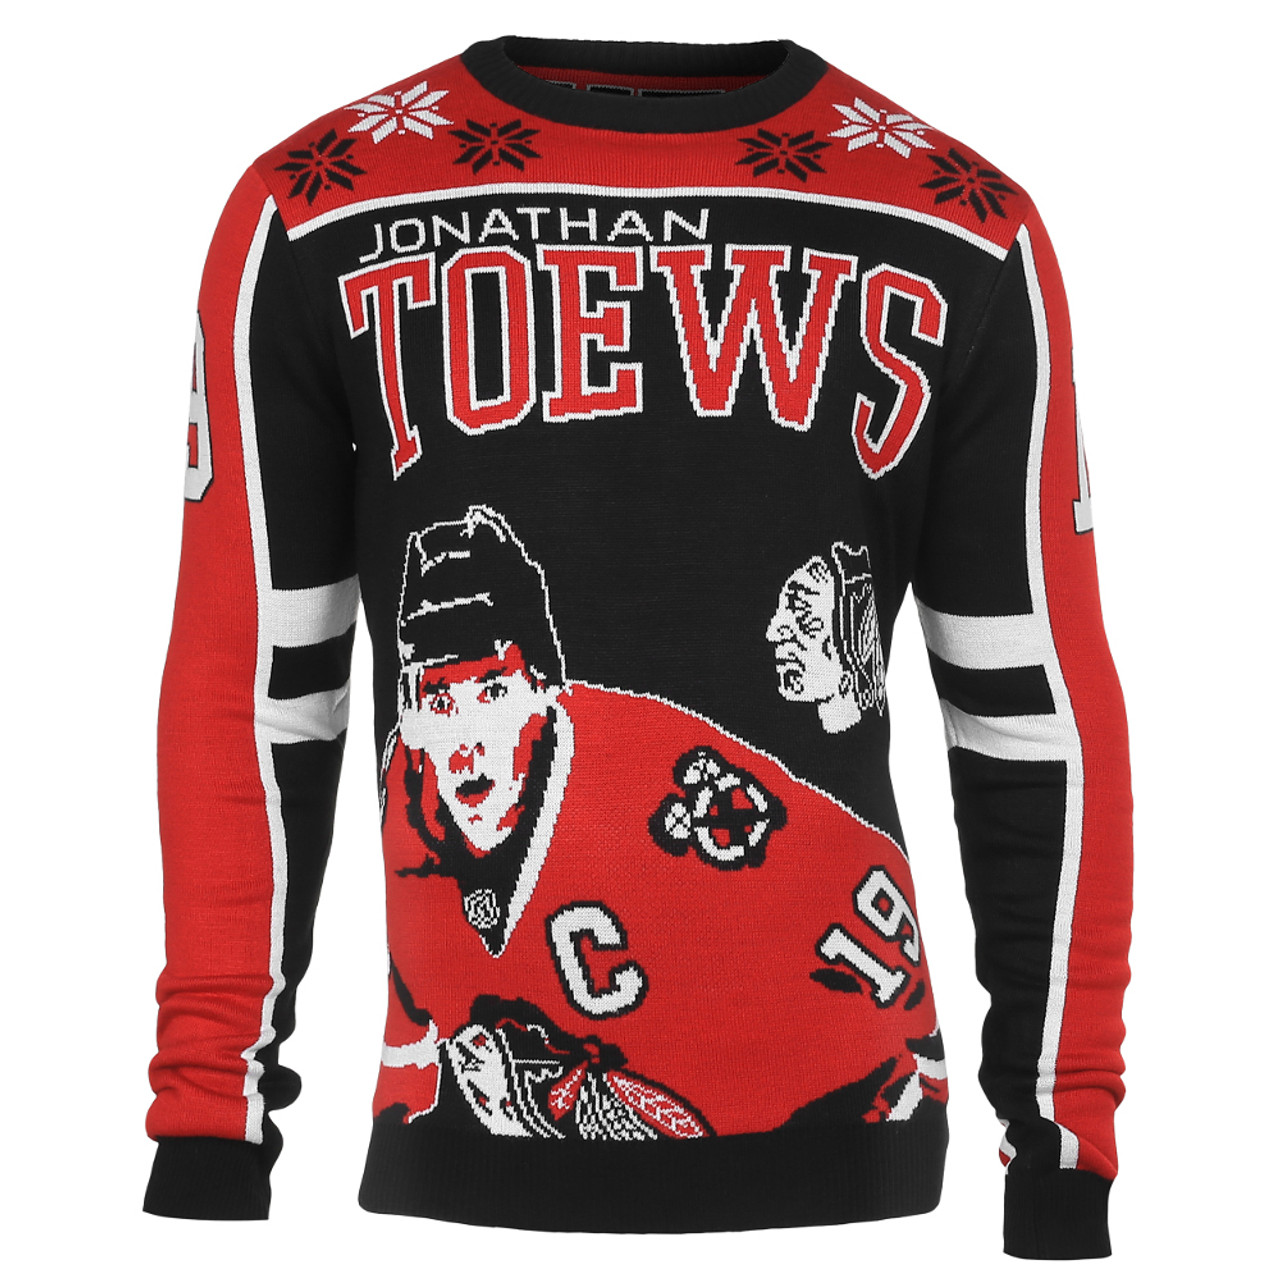 Nhl Chicago Blackhawks Ugly Christmas Sweater - Shibtee Clothing